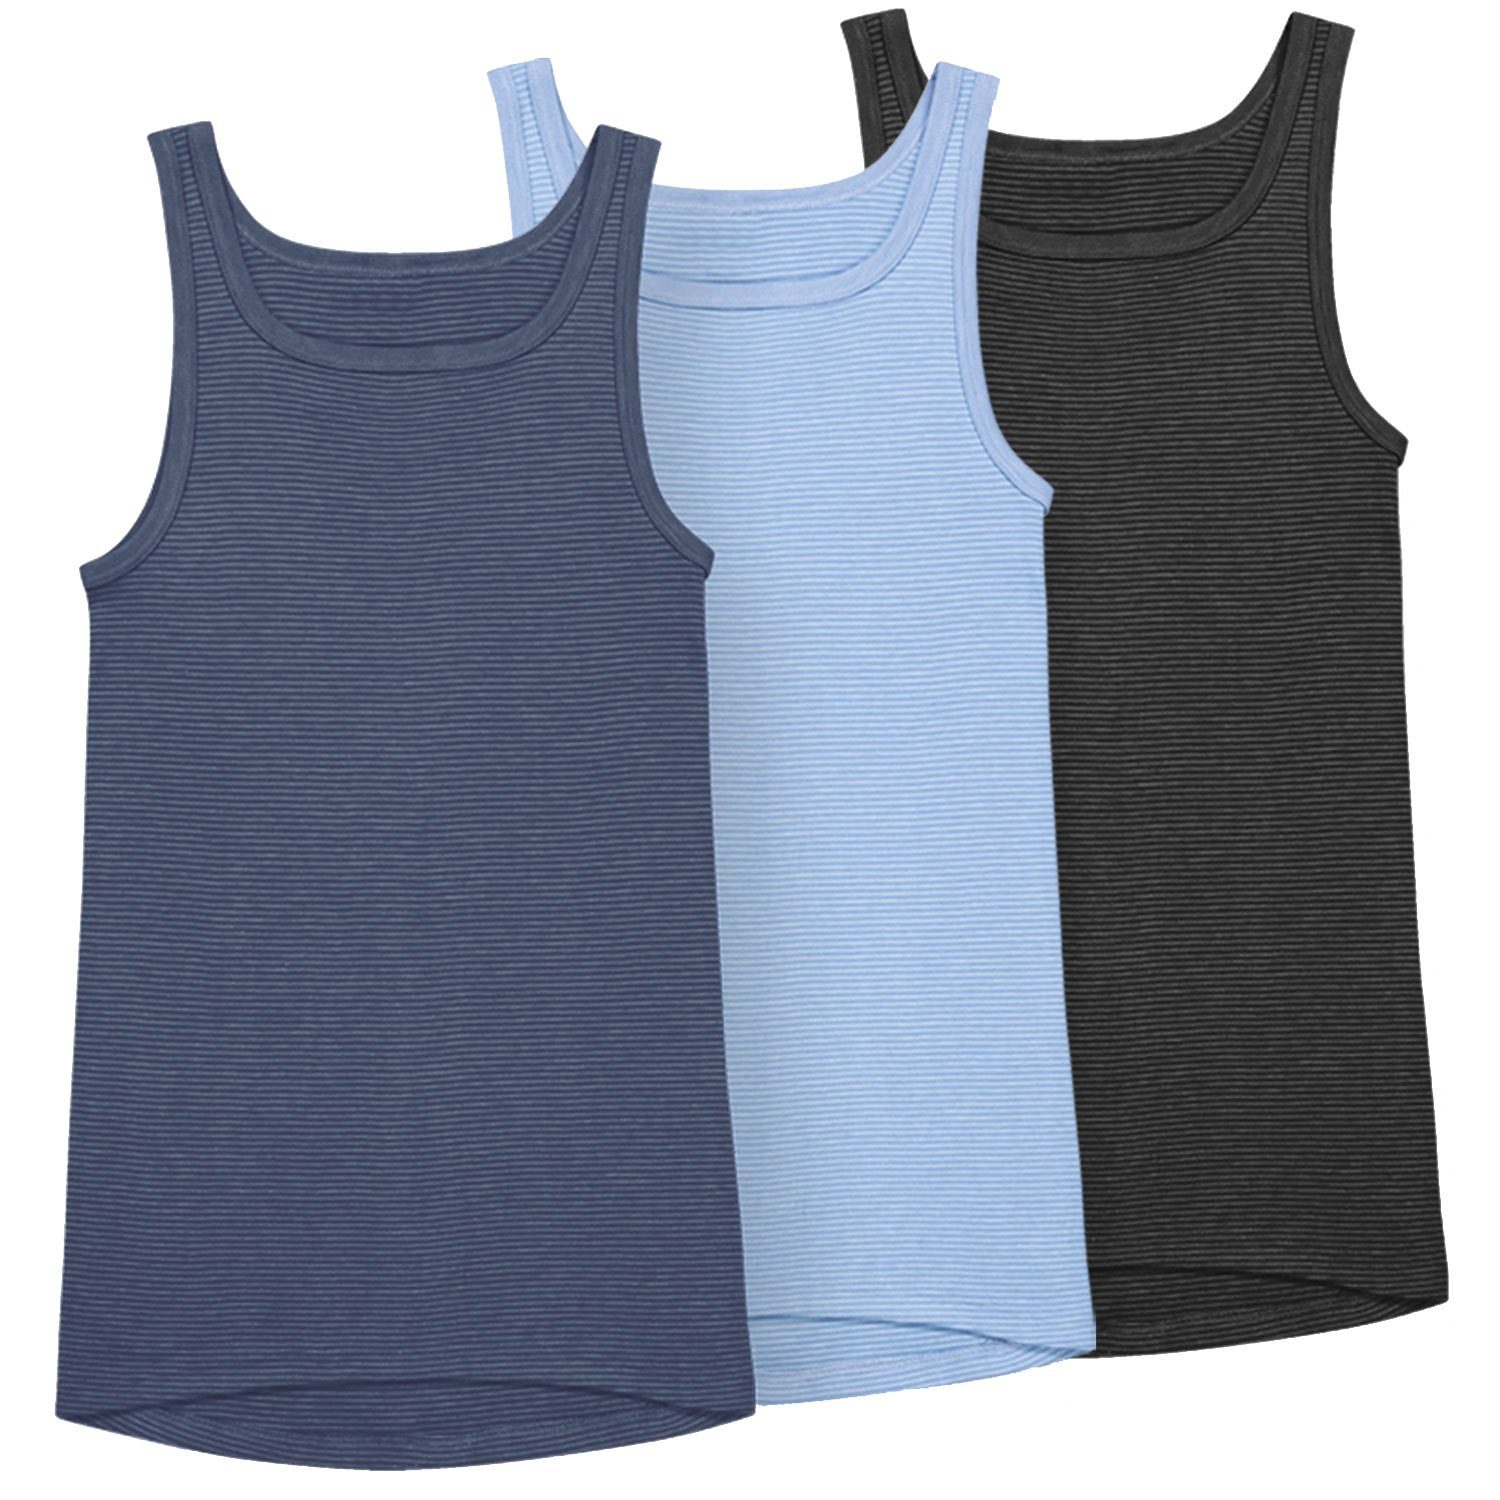 Ammann Unterhemd Jeans (Mehrpack, 3-St., 3 Stück) strapazierfähig und pflegeleicht im 3er Pack dunkelblau / hellblau / anthrazit